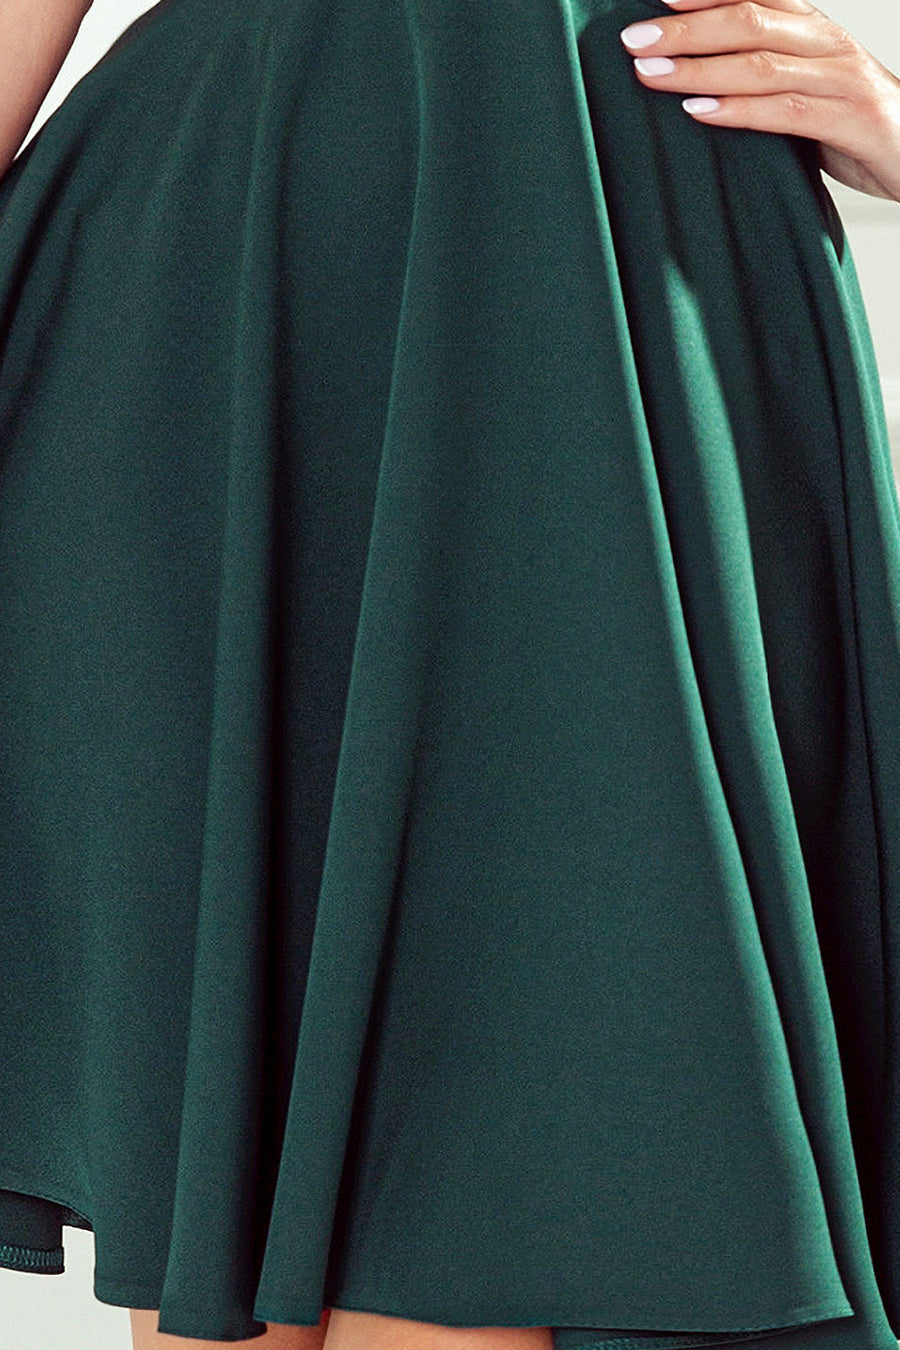 Γυναικείο φόρεμα Lelaine, Πράσινο 3